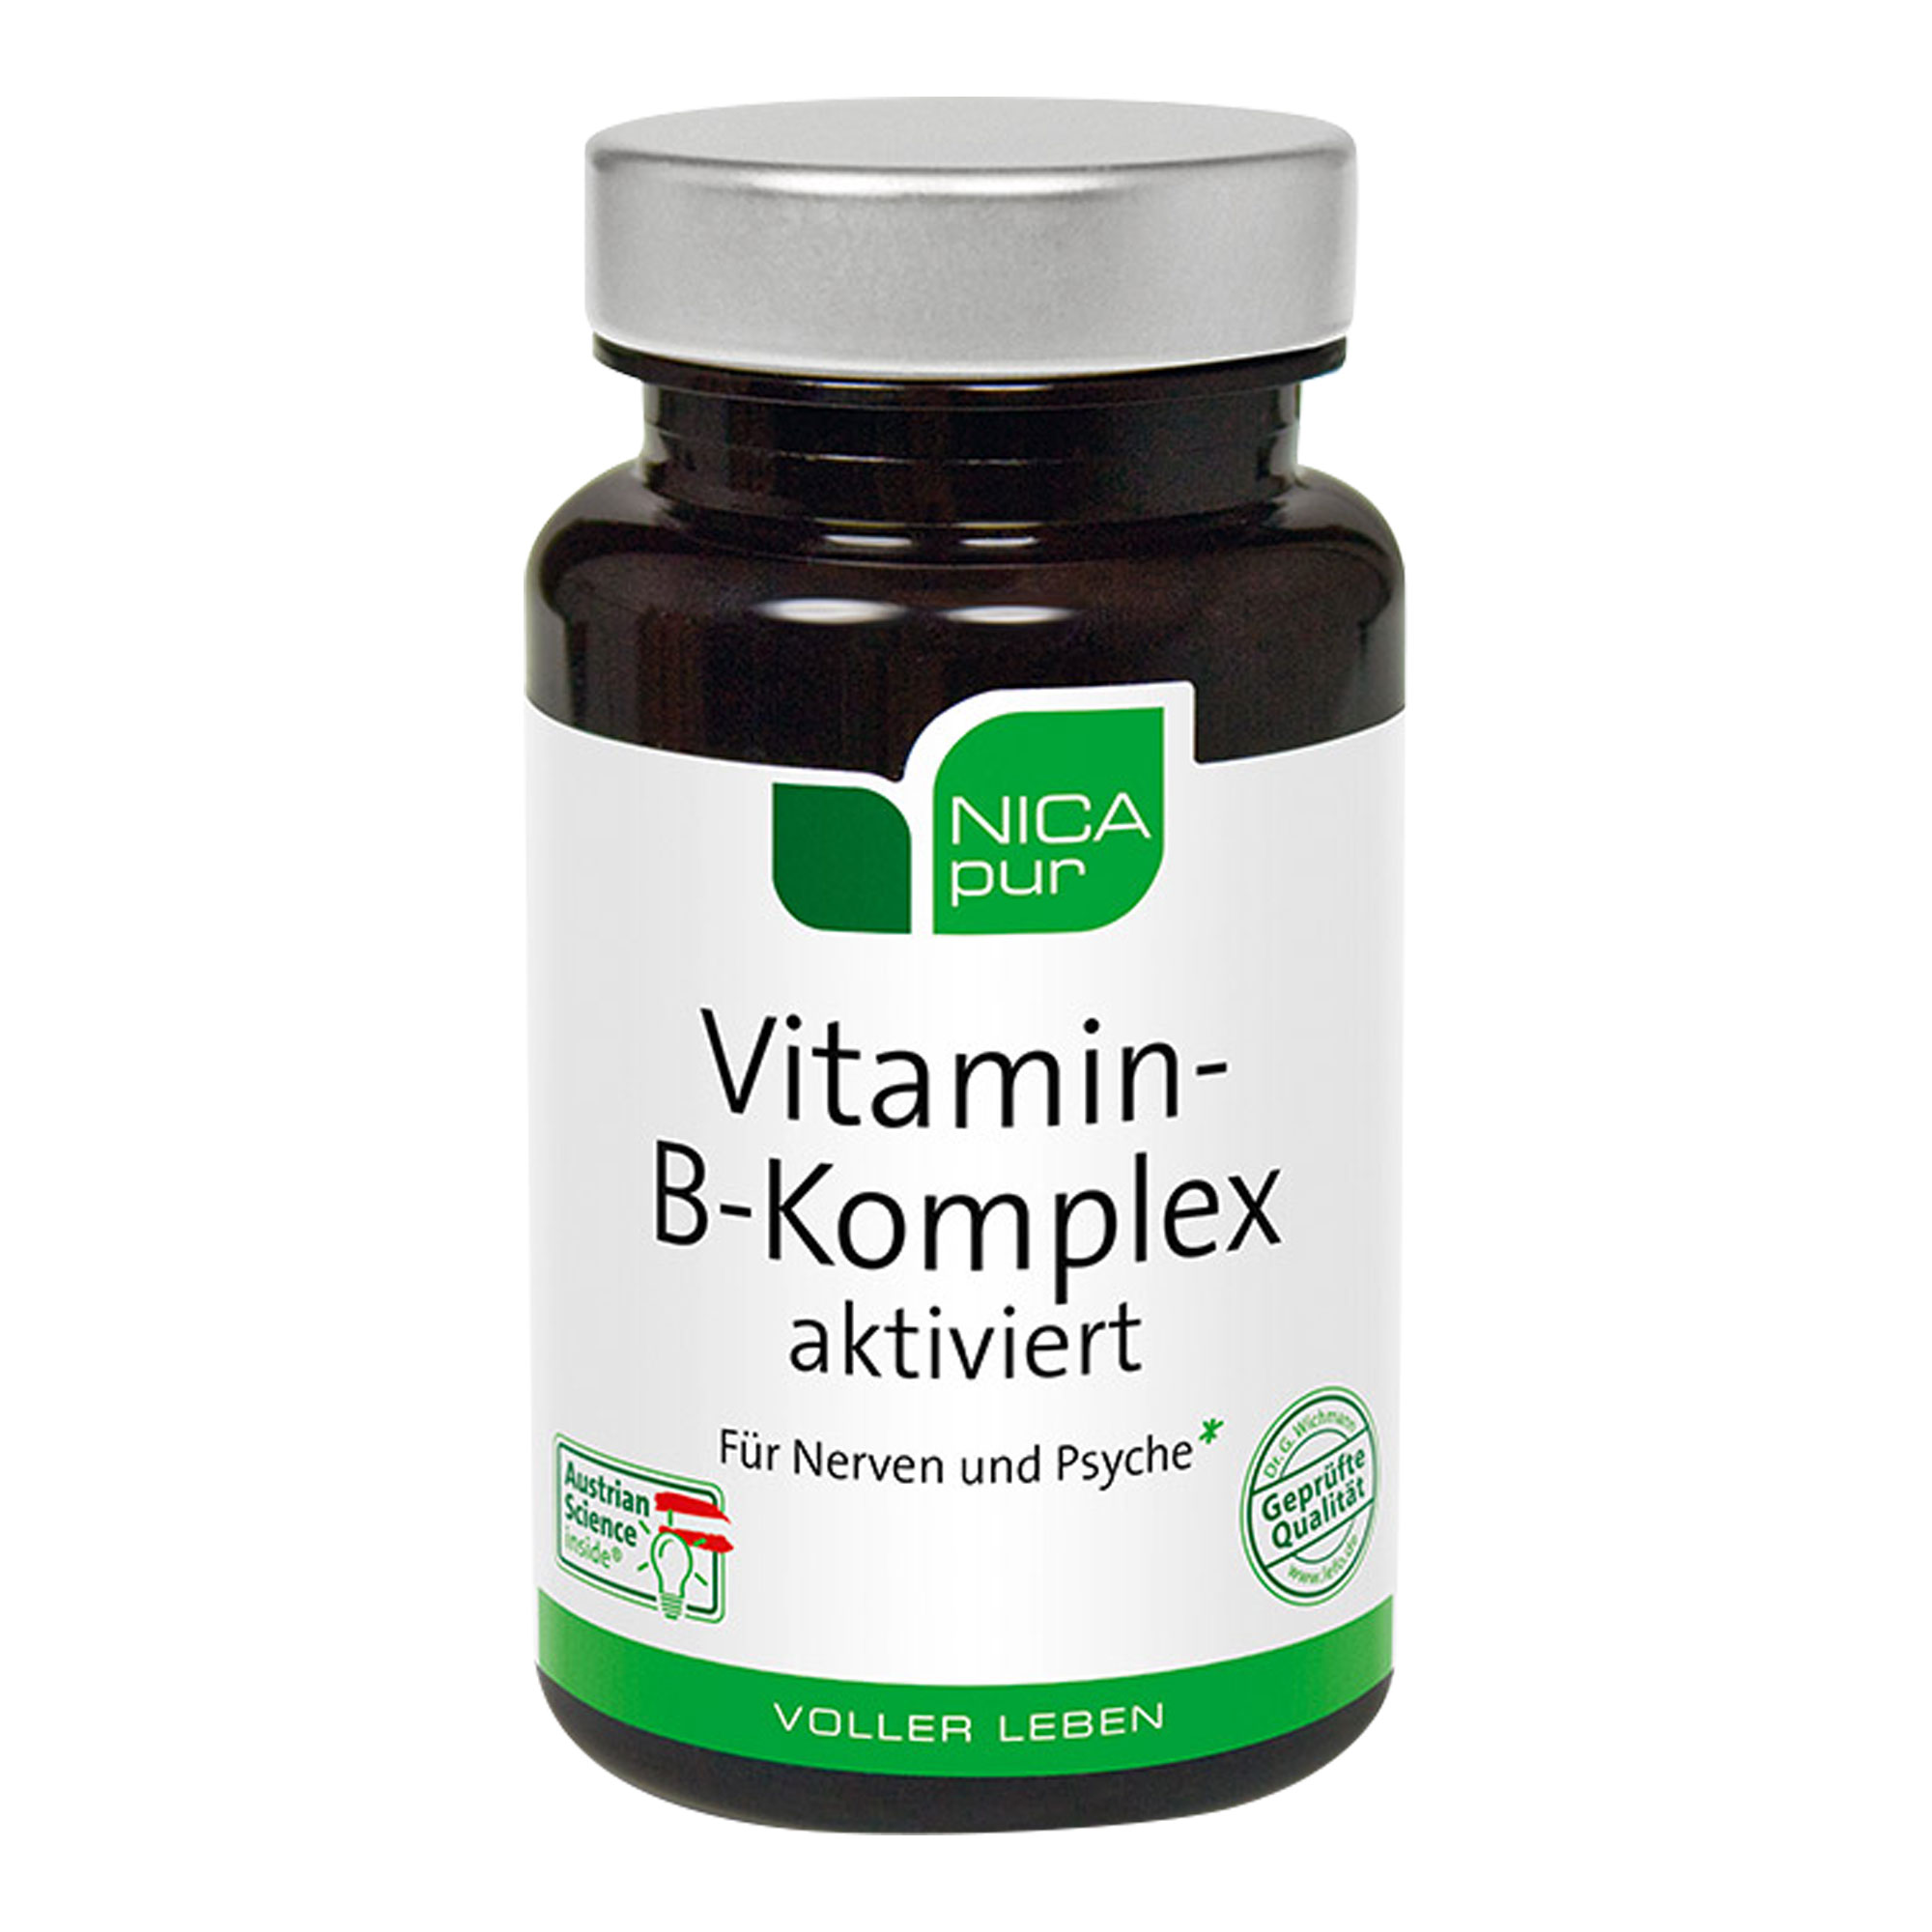 Nahrungsergänzungsmittel mit allen B-Vitaminen in hoher Dosierung.